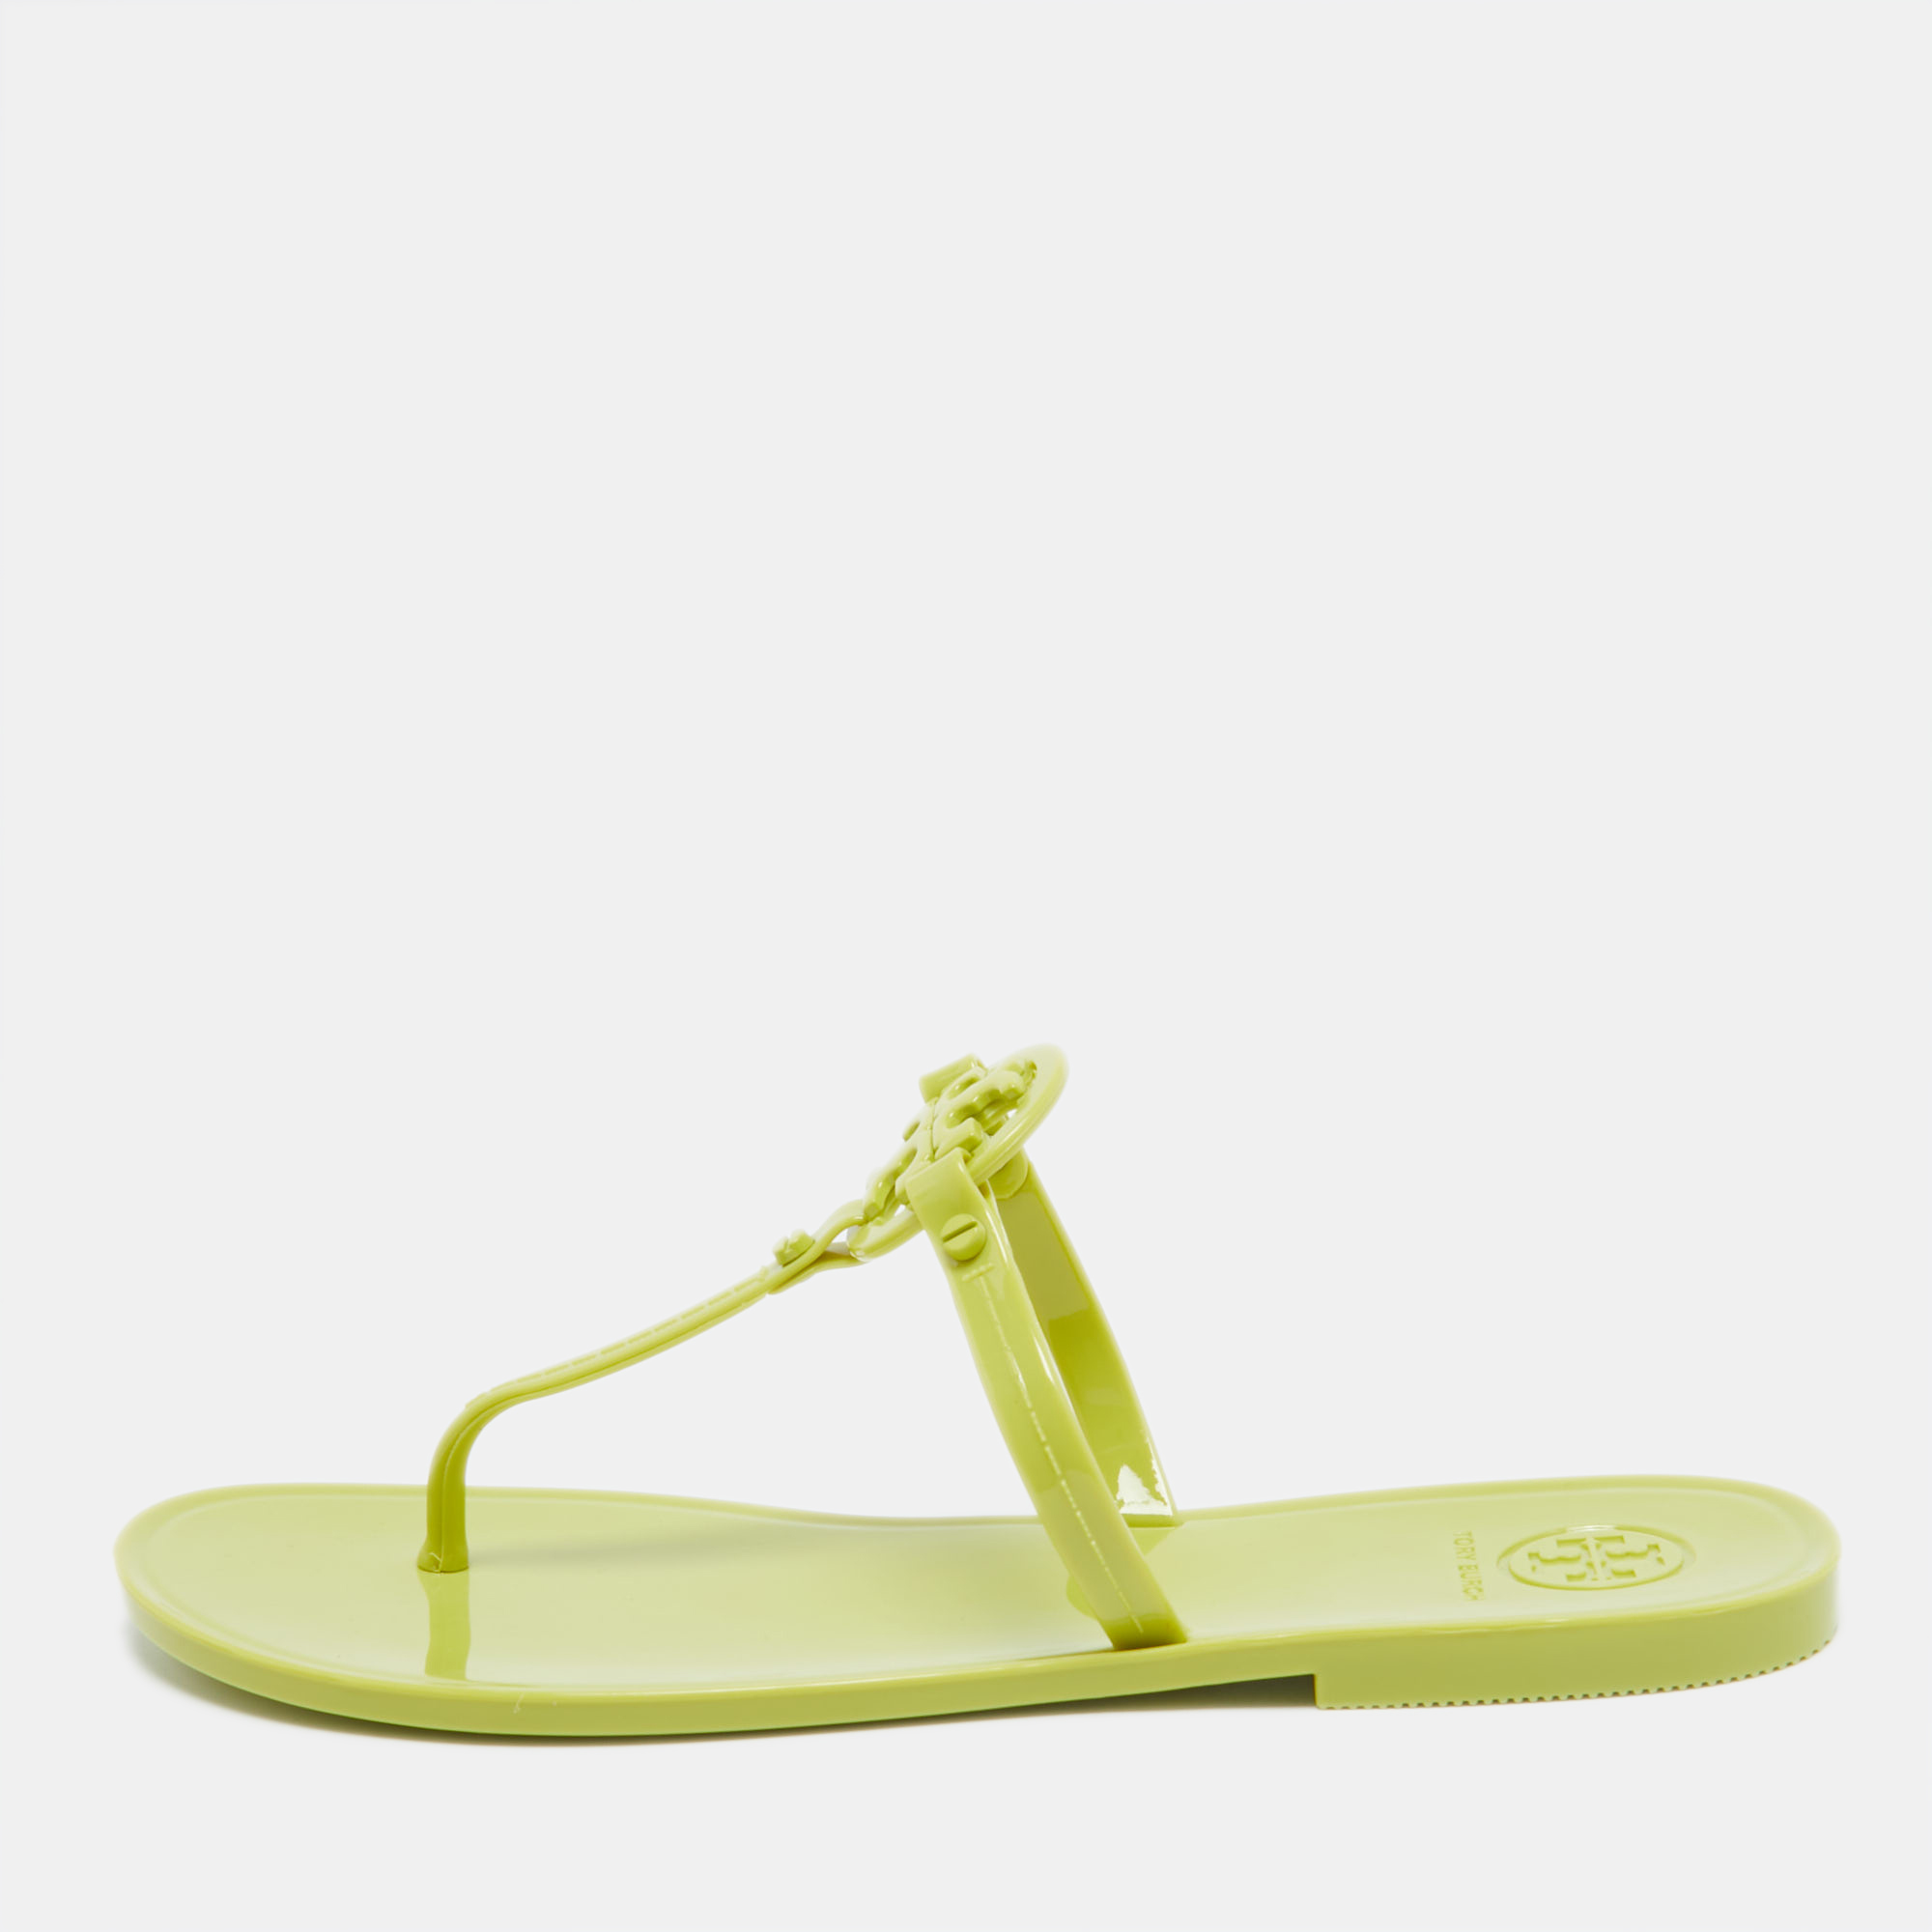 Tory burch green rubber miller flat thong sandals size 37.5